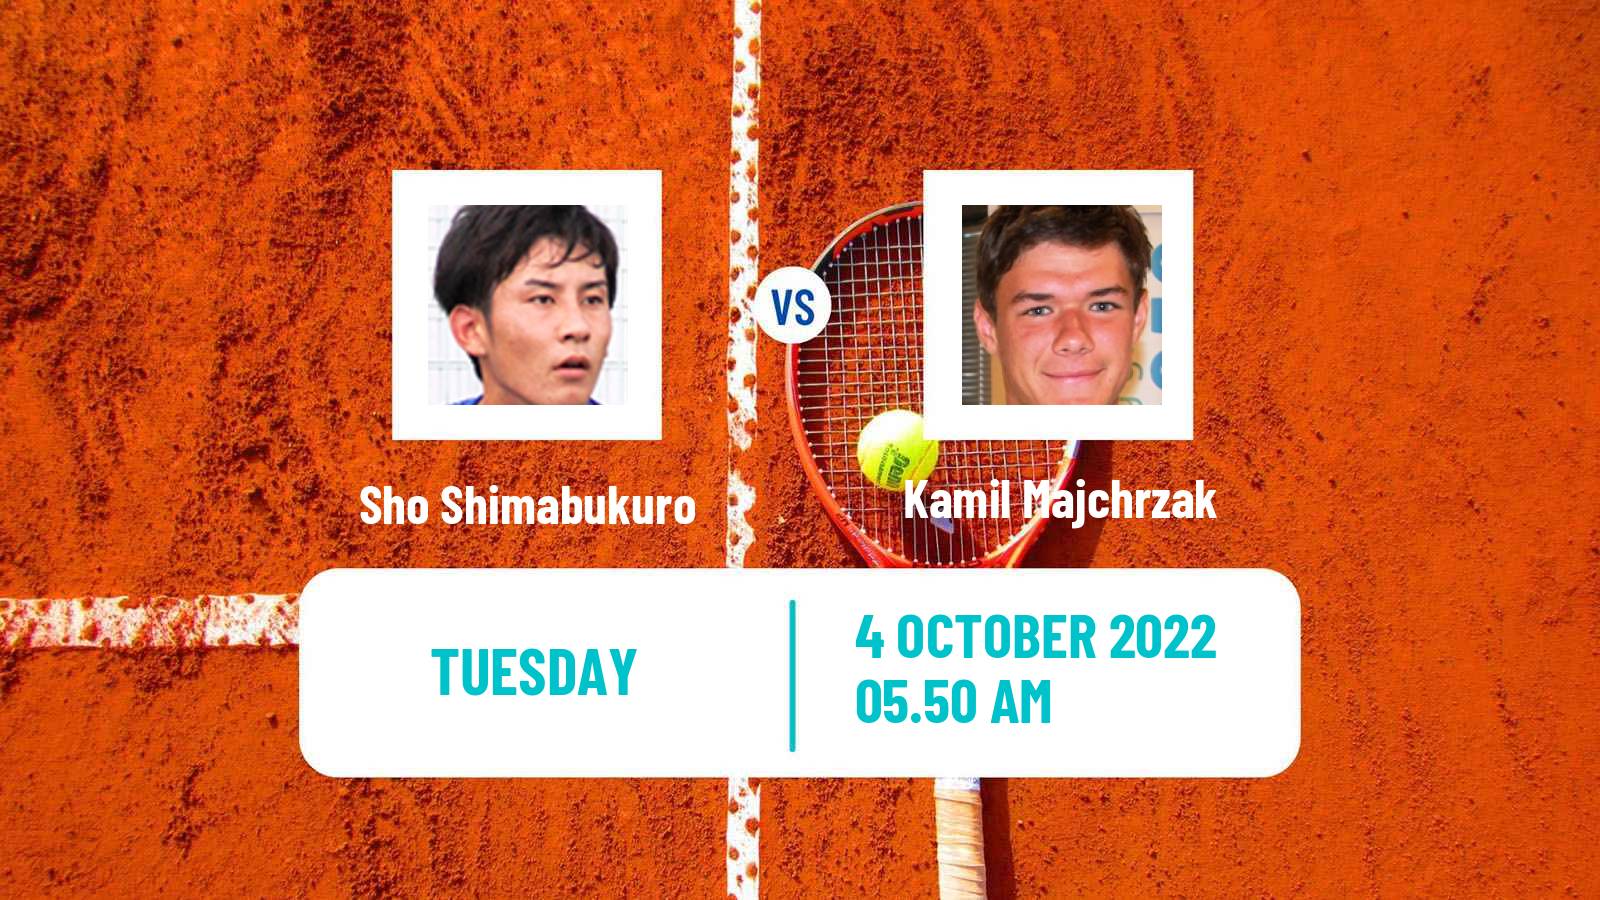 Tennis ATP Tokyo Sho Shimabukuro - Kamil Majchrzak